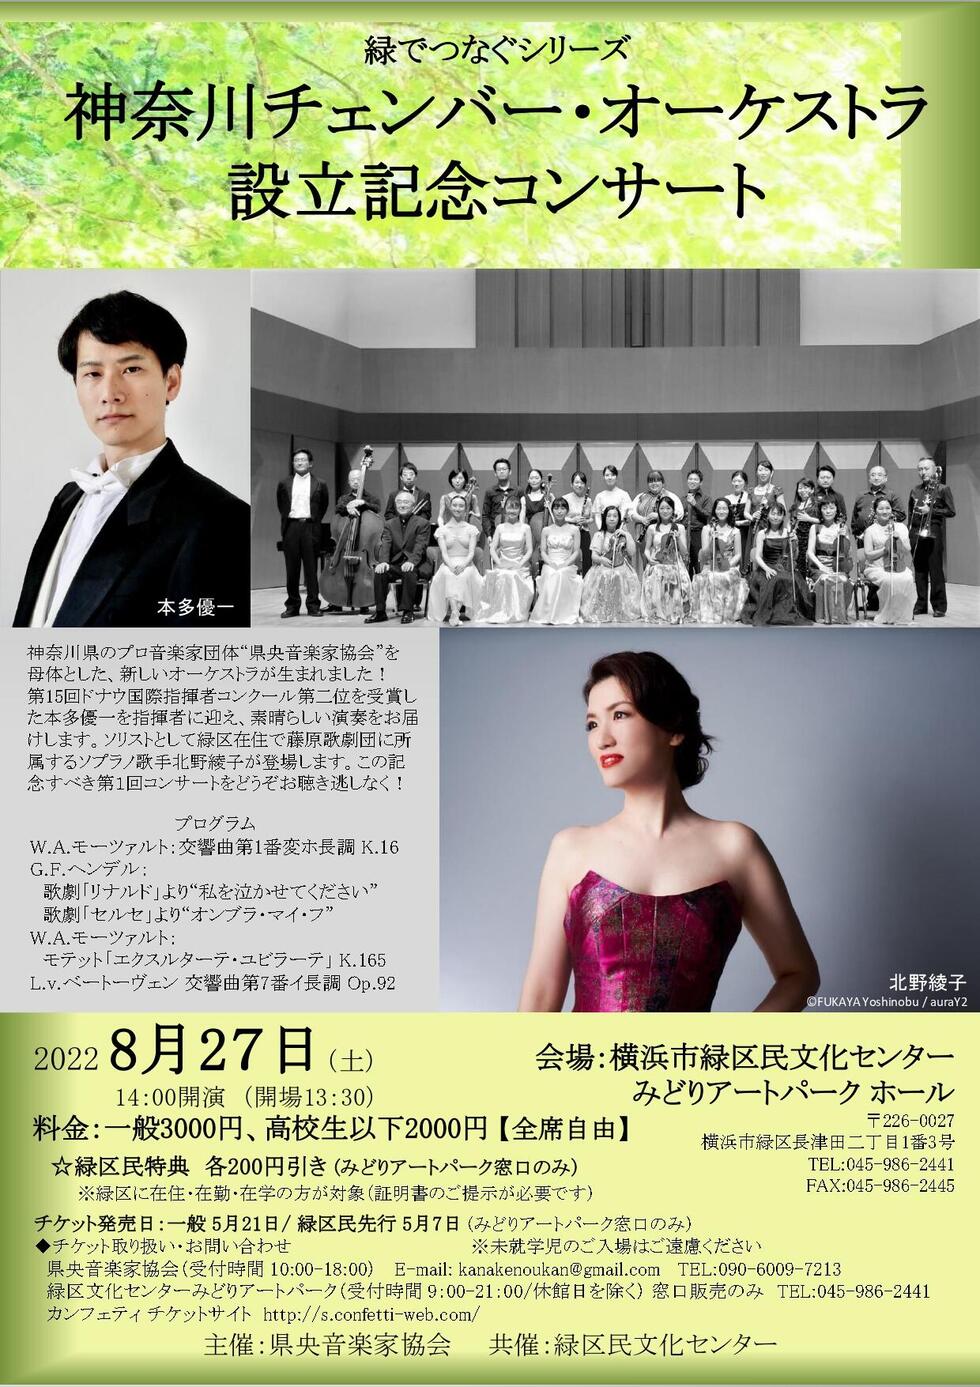 神奈川チェンバー・オーケストラ 設立記念コンサートの写真